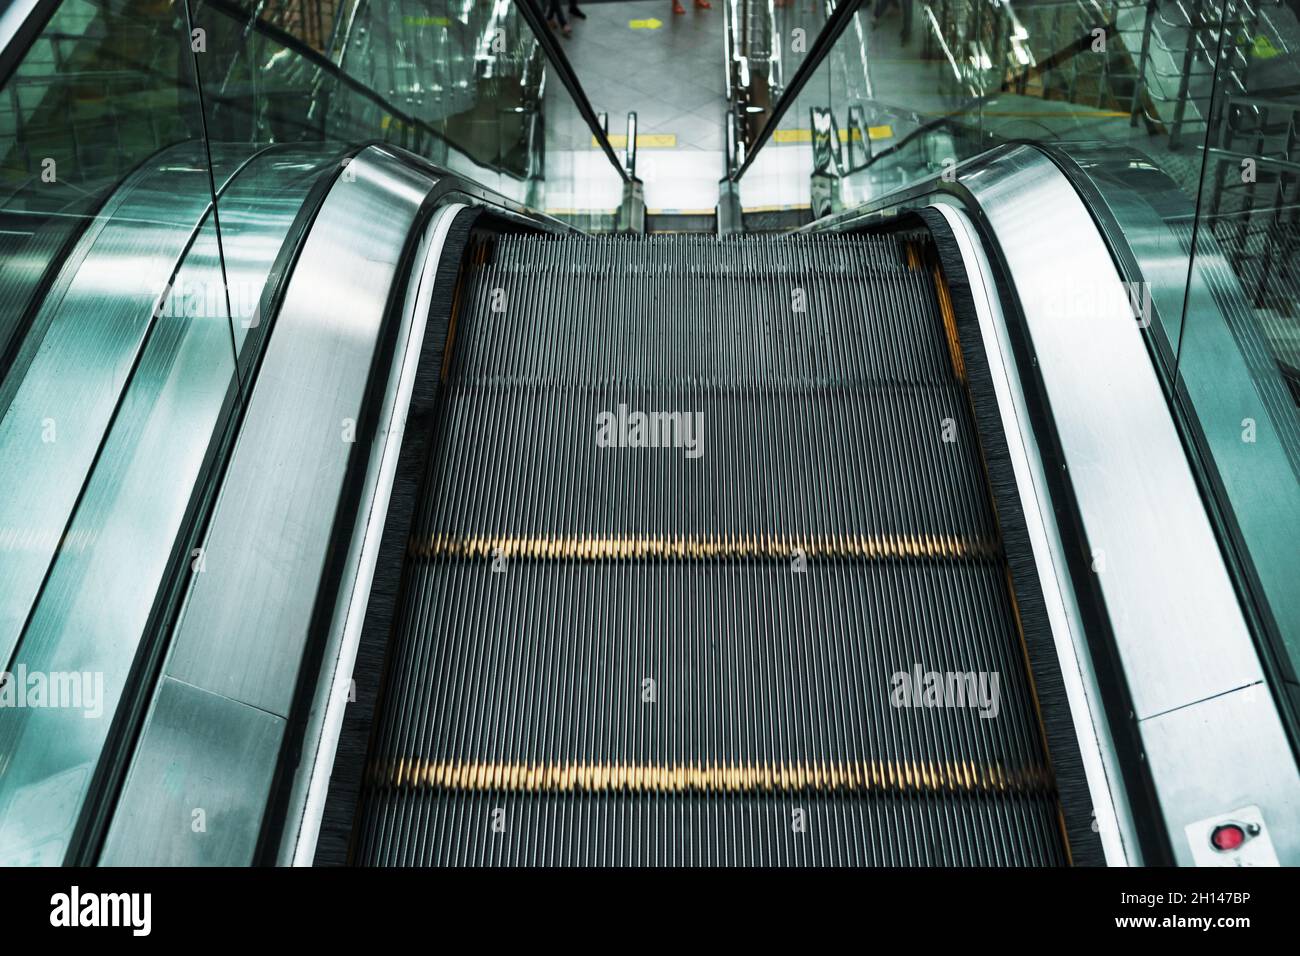 Эскалатор метрополитена безопасность. Эскалатор. Ограждение эскалатора метро. Самый короткий эскалатор в мире. Промышленная безопасность эскалаторов в метрополитенах.